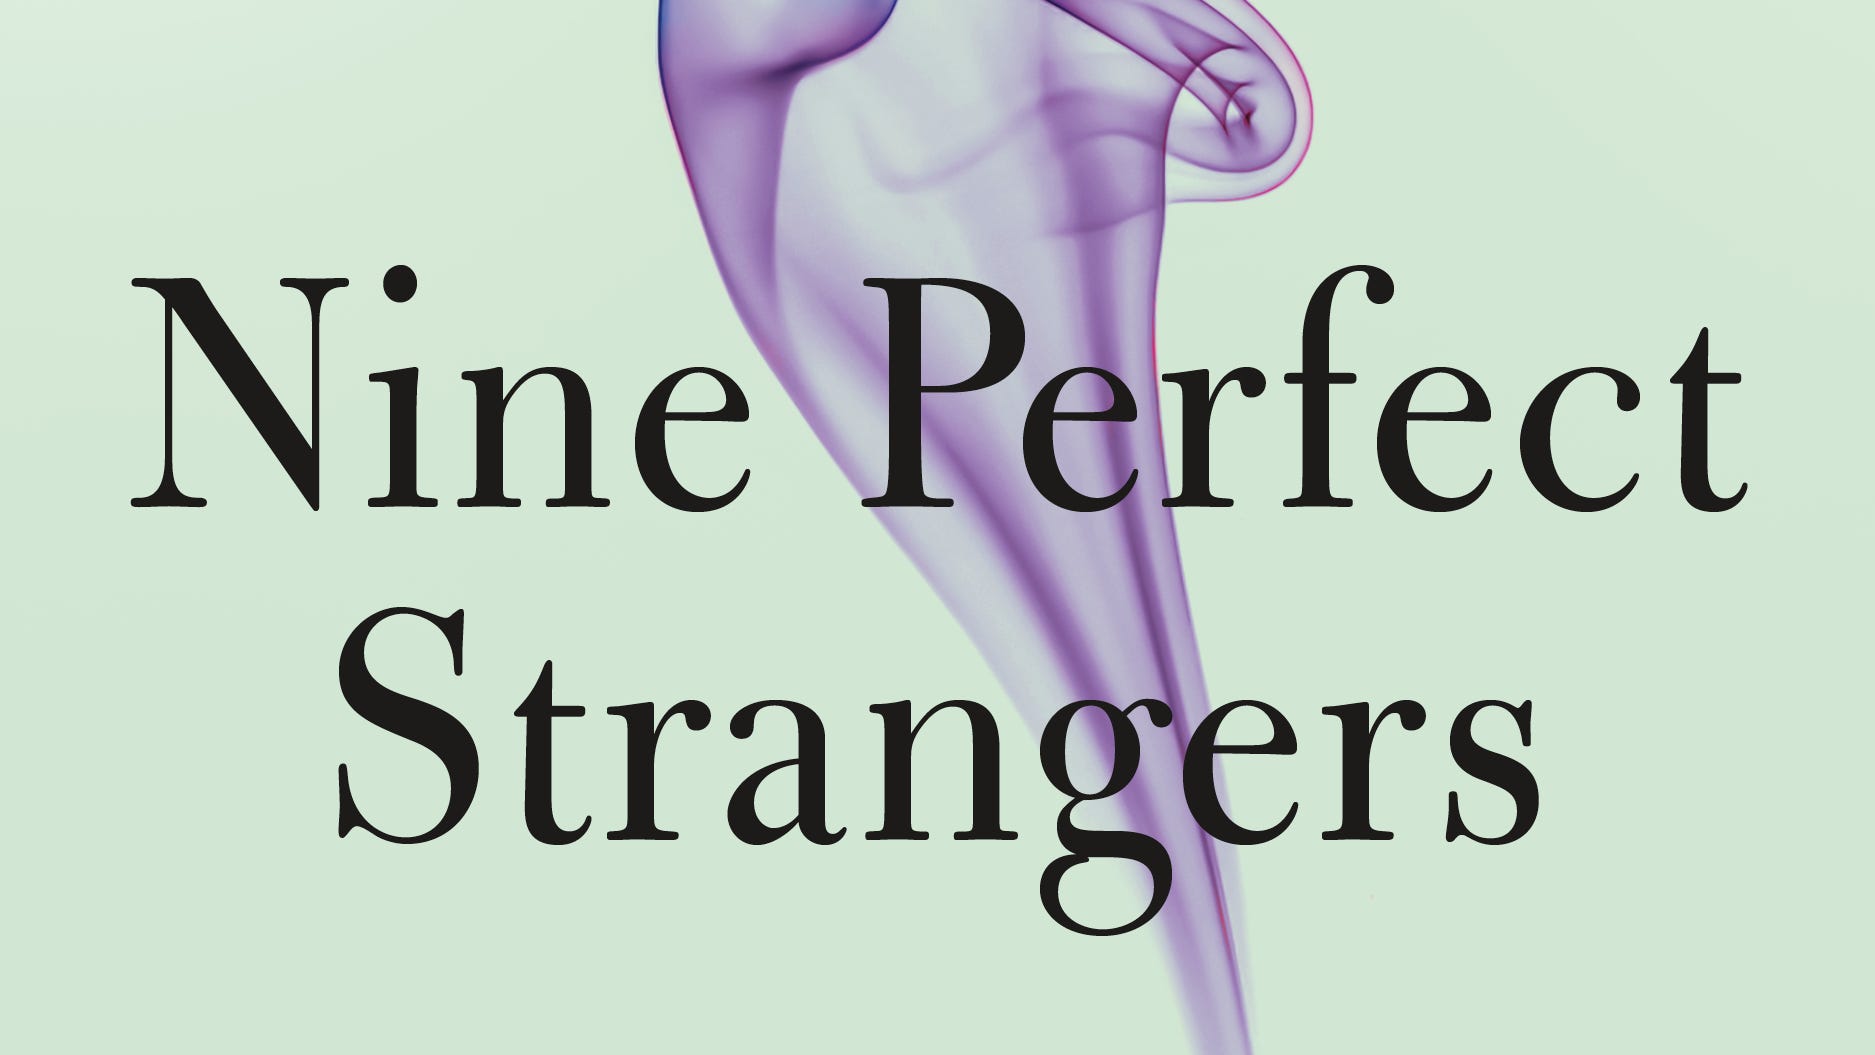 Nine perfect strangers